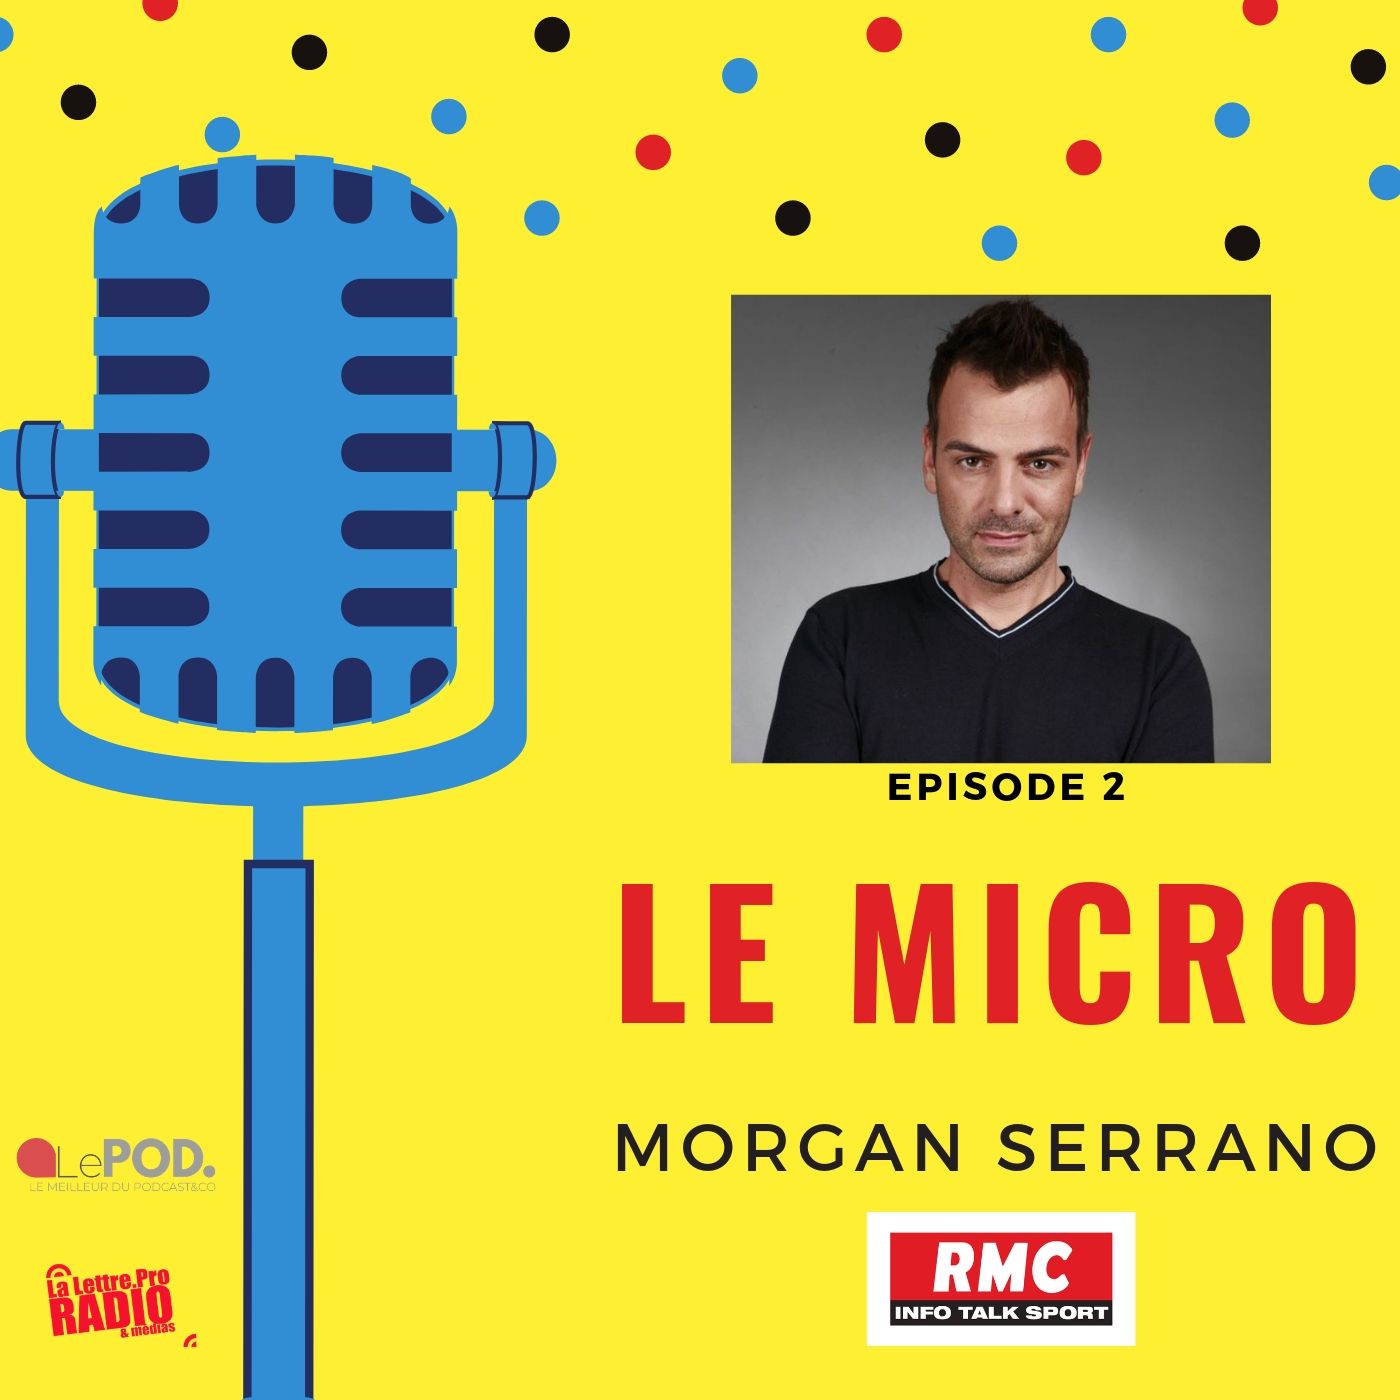 Podcast : Morgan Serrano (RMC) est l'invité du "Micro"